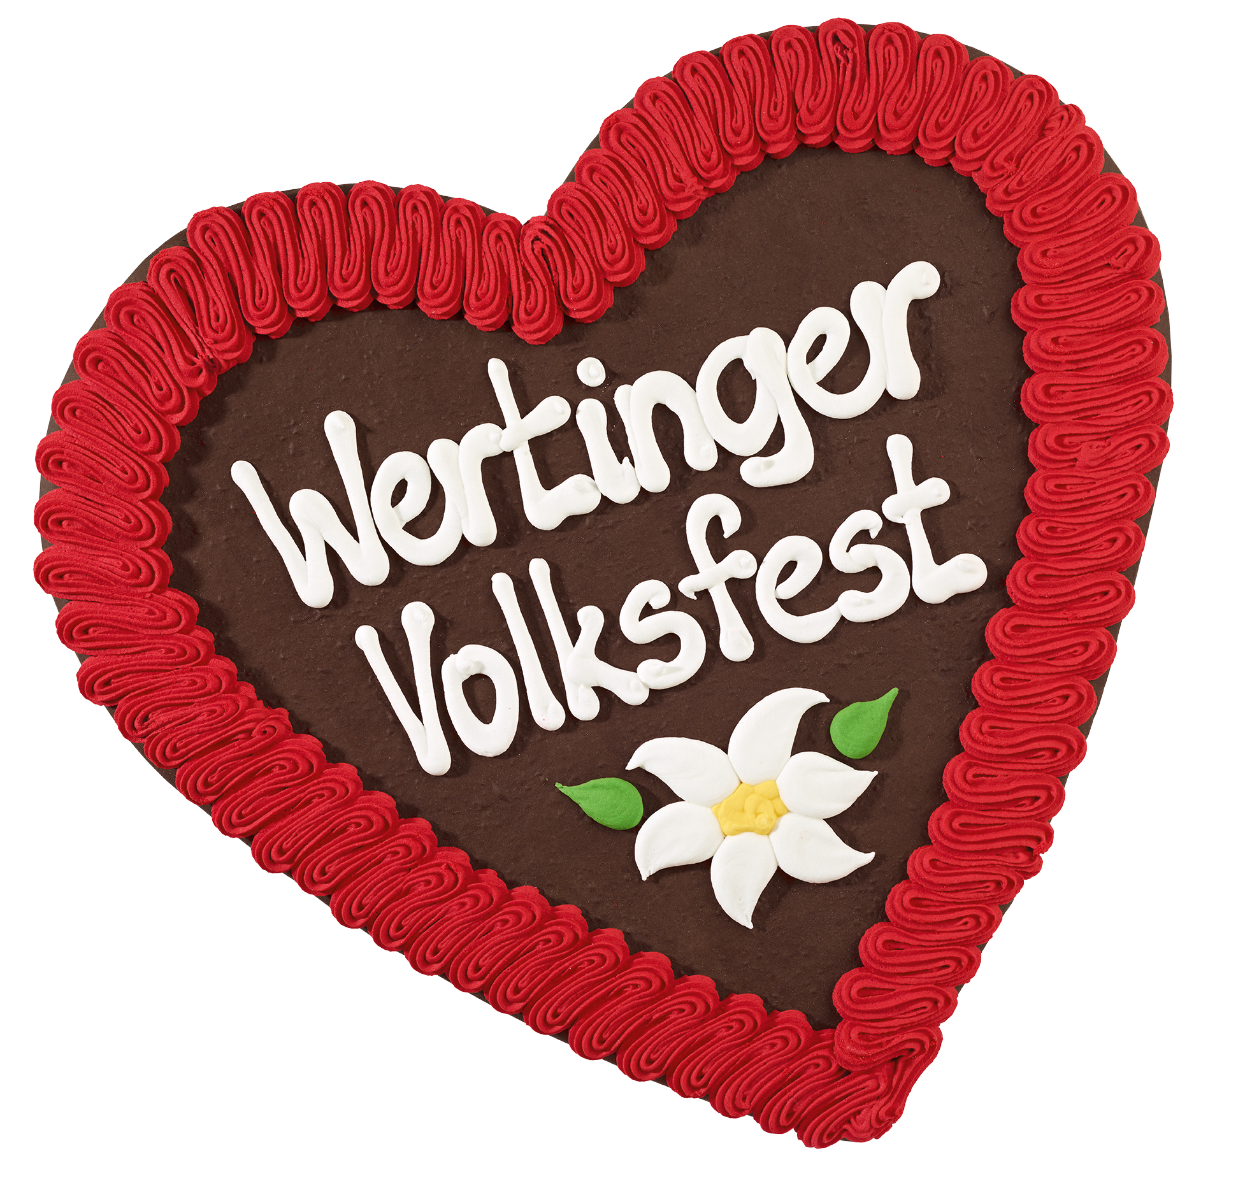 (c) Wertinger-volksfest.de